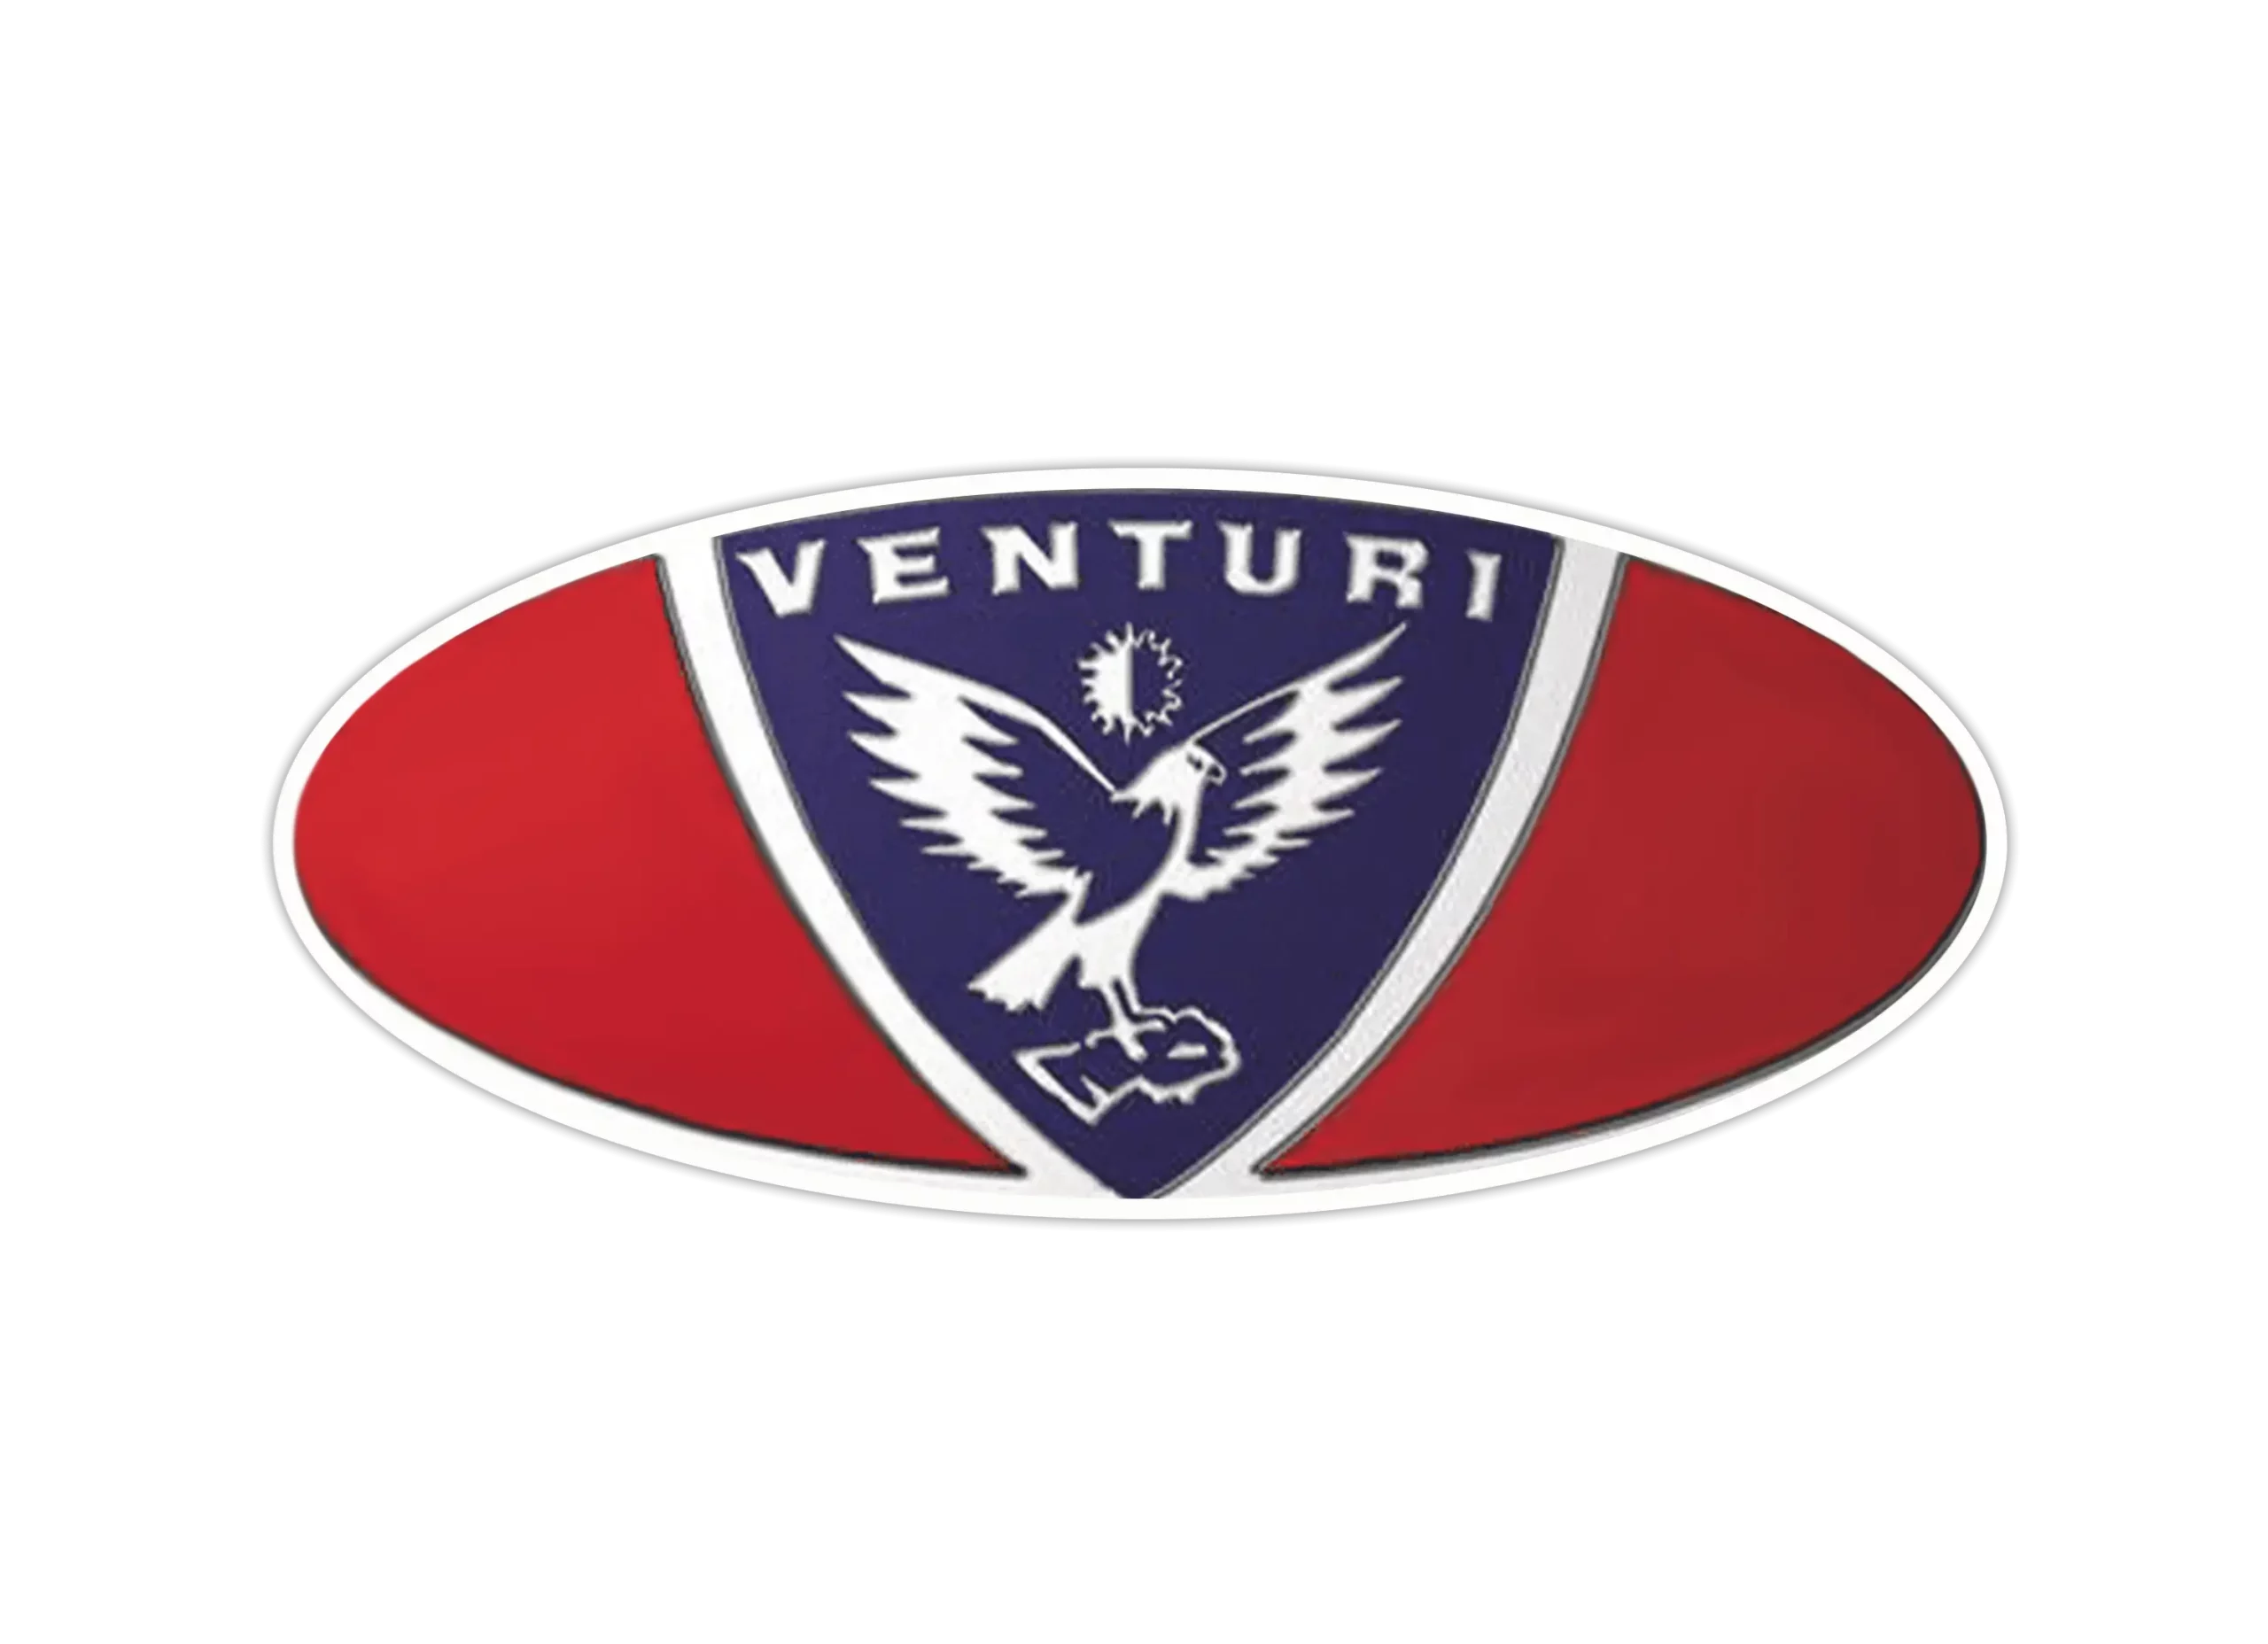 Venturi logo 1984-2001